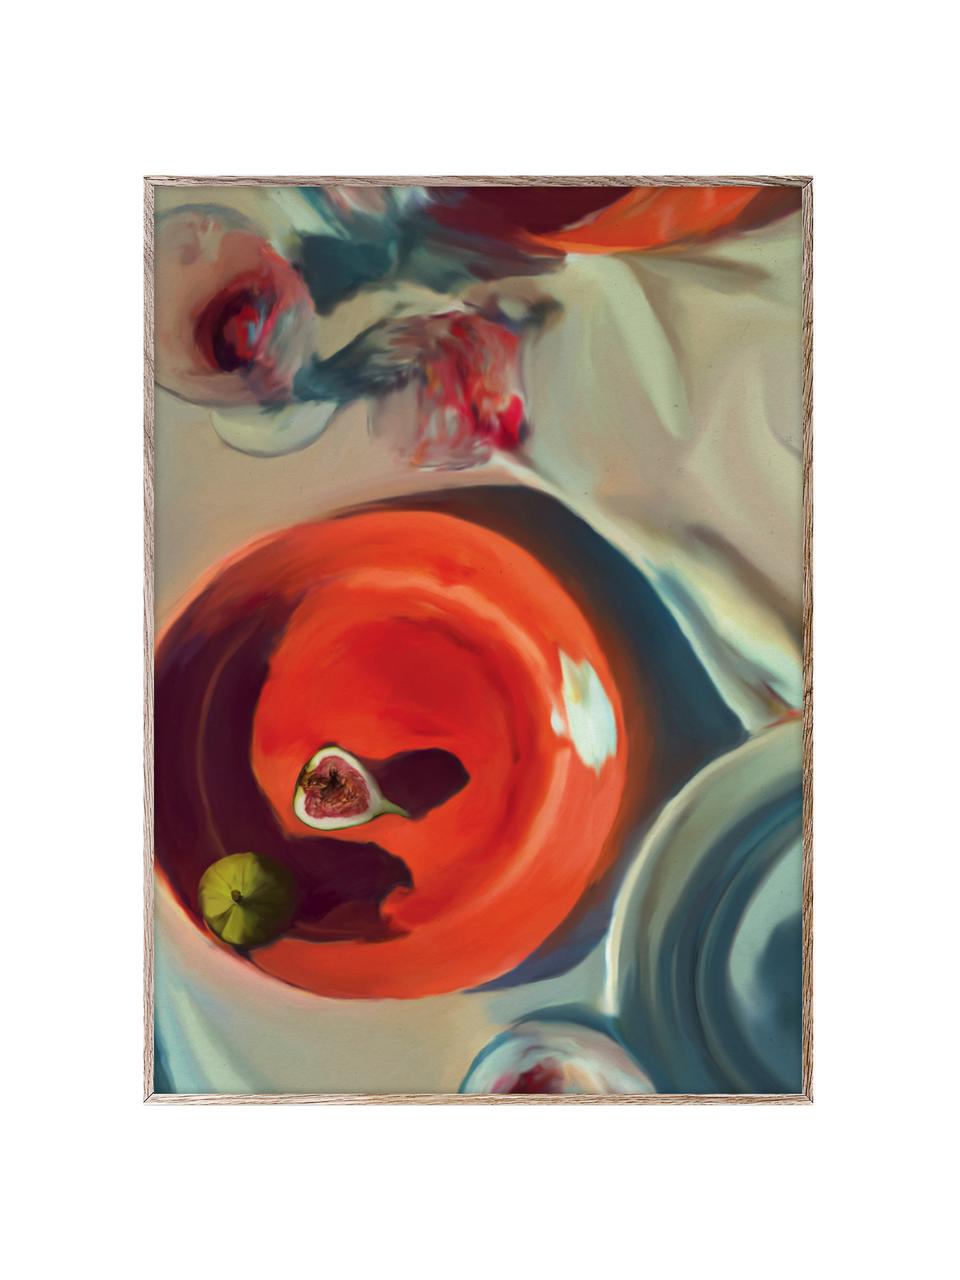 Plagát Fine Dining, 210 g matný papier Hahnemühle, digitálna tlač s 10 farbami odolnými voči UV žiareniu, Koralovočervená, hnedosivá, Š 30 x V 40 cm